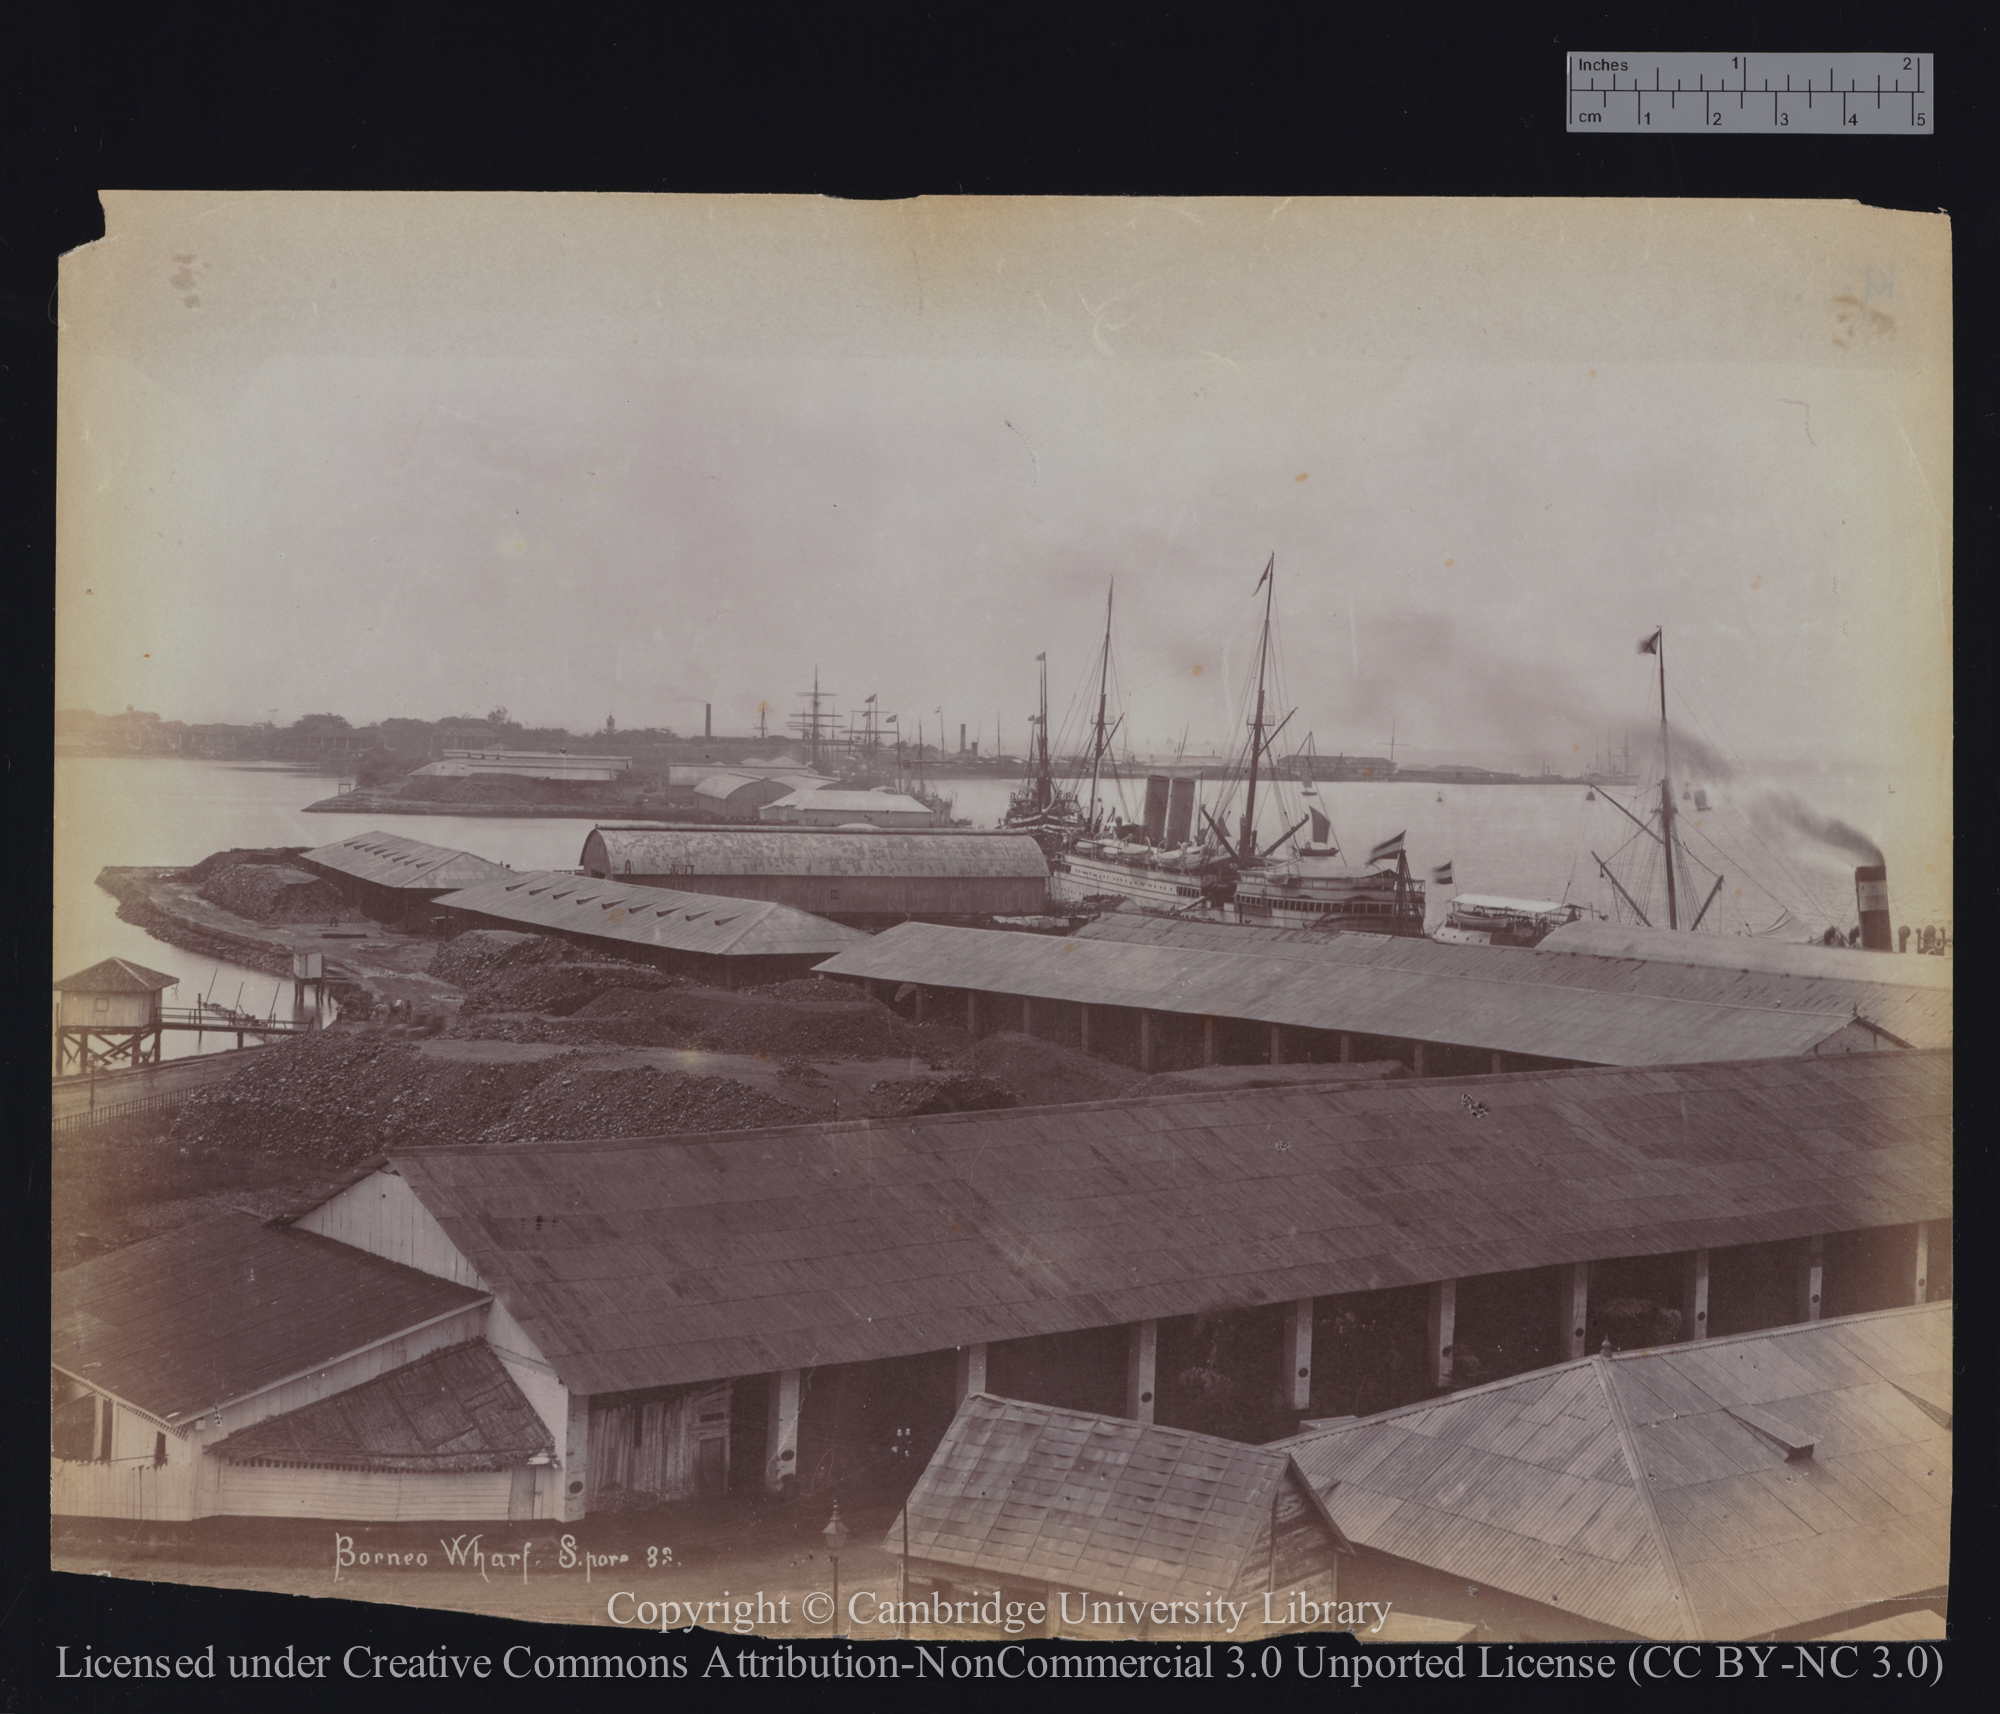 Borneo wharf, Singapore, 1890 - 1899